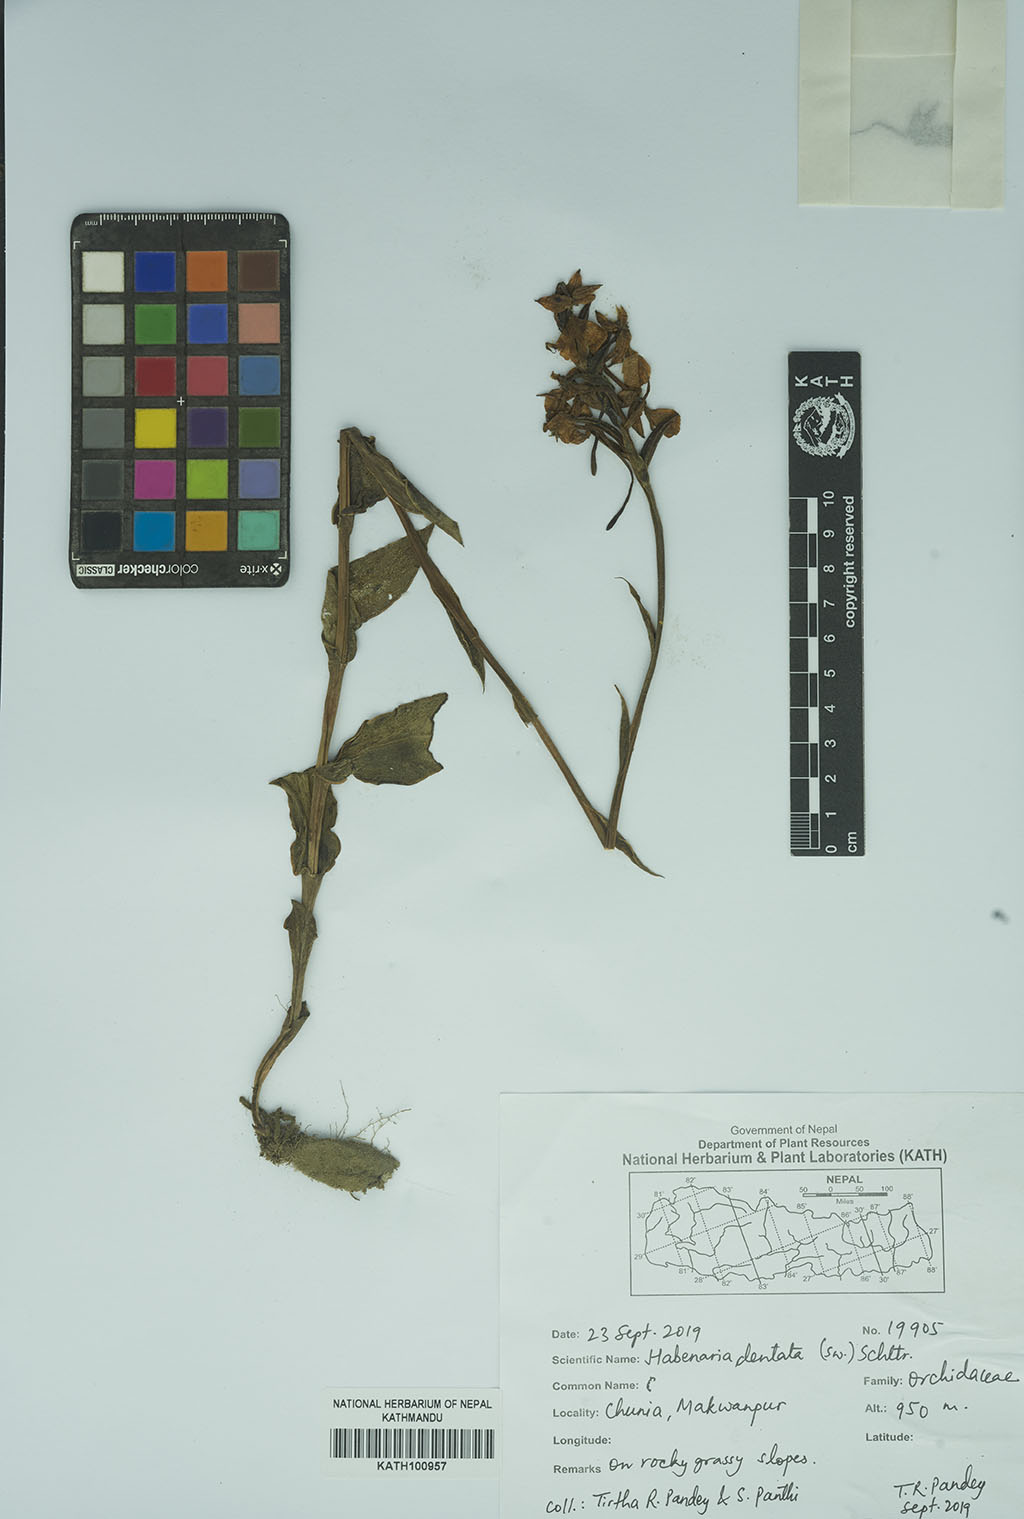 Habenaria dentata (Sw.) Schltr.